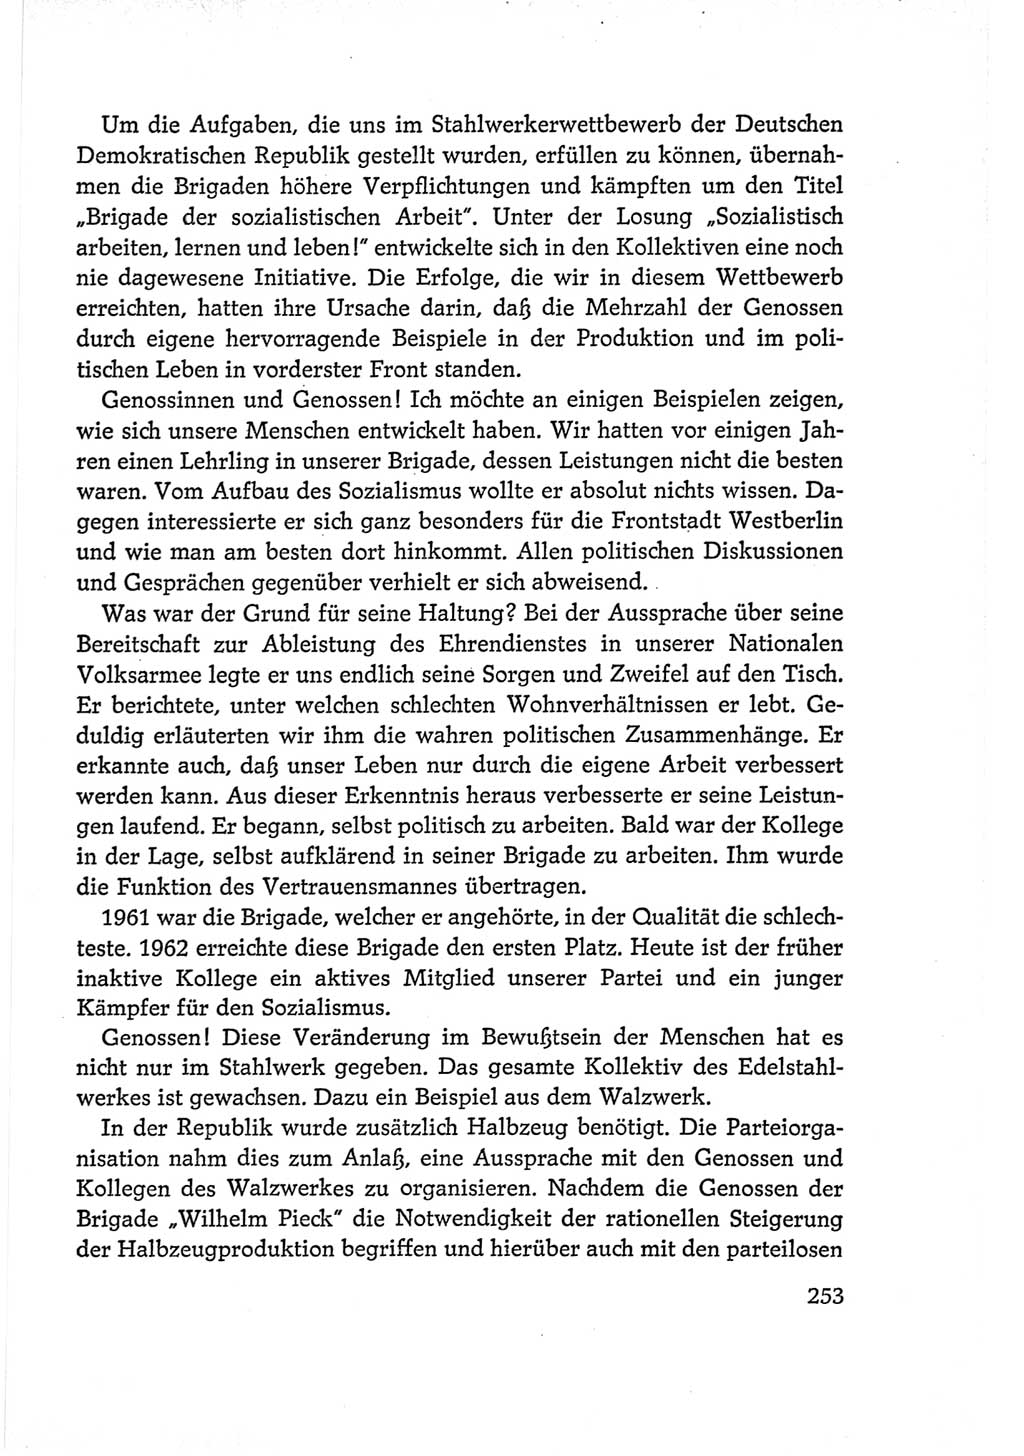 Protokoll der Verhandlungen des Ⅵ. Parteitages der Sozialistischen Einheitspartei Deutschlands (SED) [Deutsche Demokratische Republik (DDR)] 1963, Band Ⅰ, Seite 253 (Prot. Verh. Ⅵ. PT SED DDR 1963, Bd. Ⅰ, S. 253)